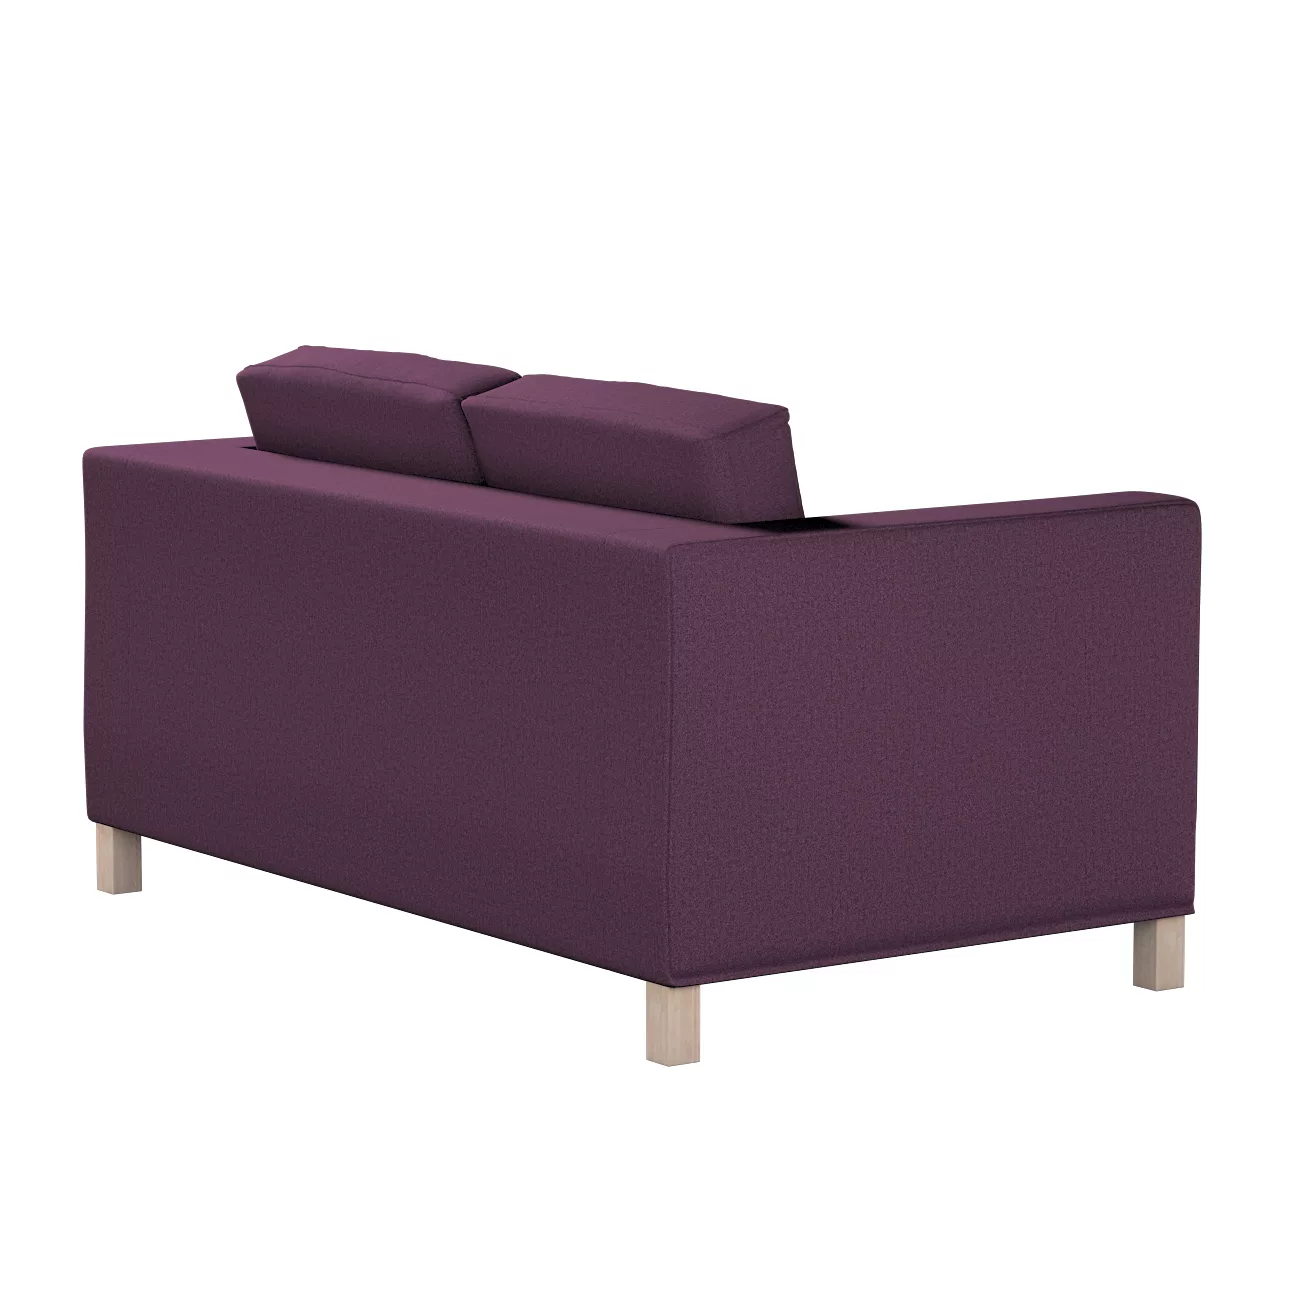 Bezug für Karlanda 2-Sitzer Sofa nicht ausklappbar, kurz, pflaume, 60cm x 3 günstig online kaufen